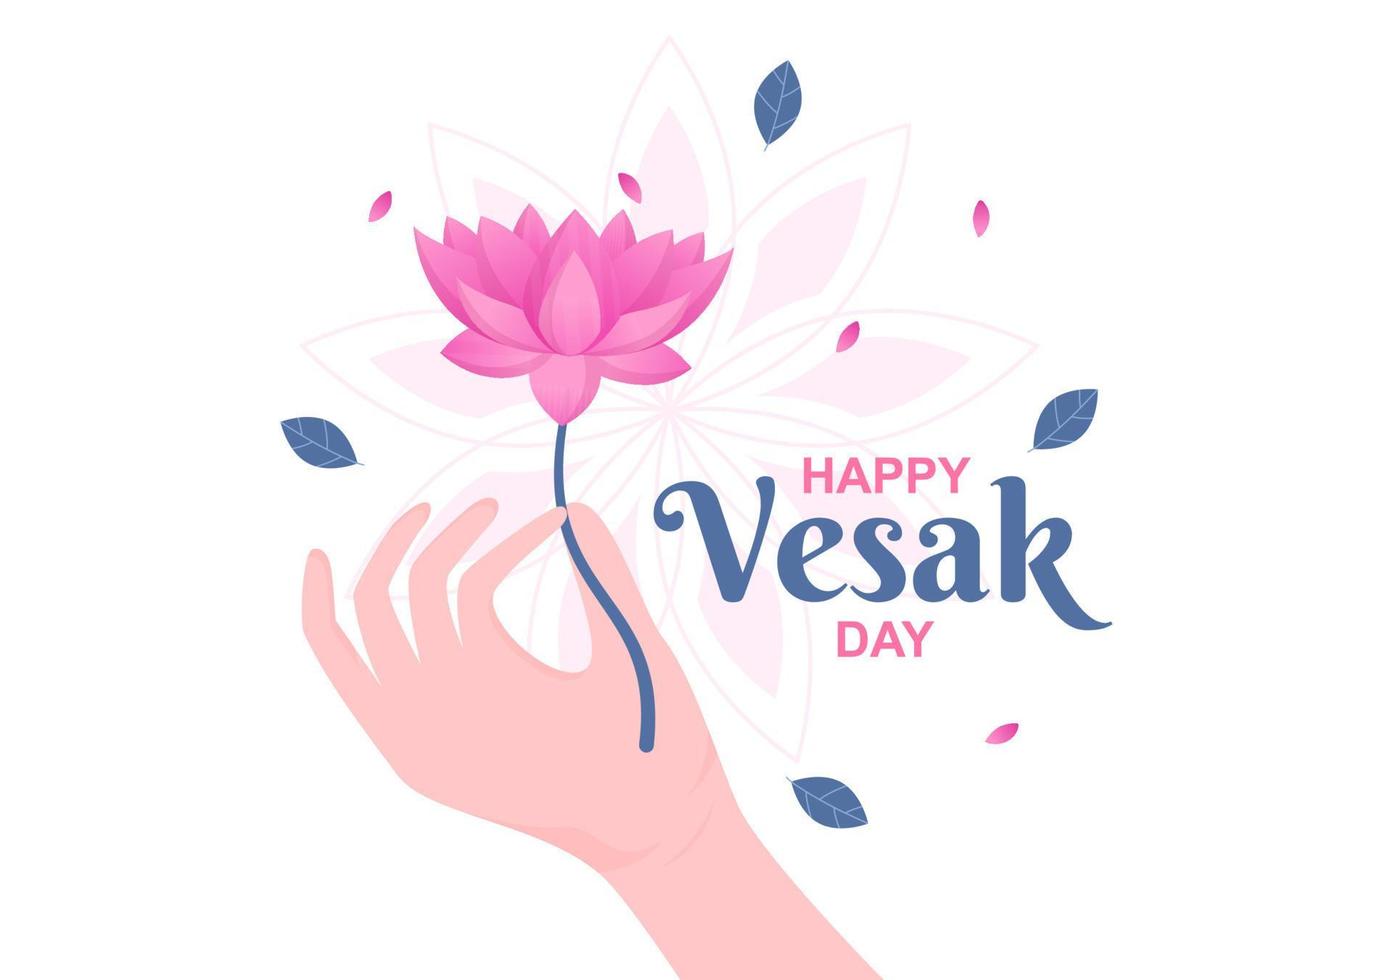 célébration de la journée vesak avec décoration de silhouette de temple, de lanterne ou de fleur de lotus en illustration de fond de dessin animé plat pour carte de voeux ou affiche vecteur